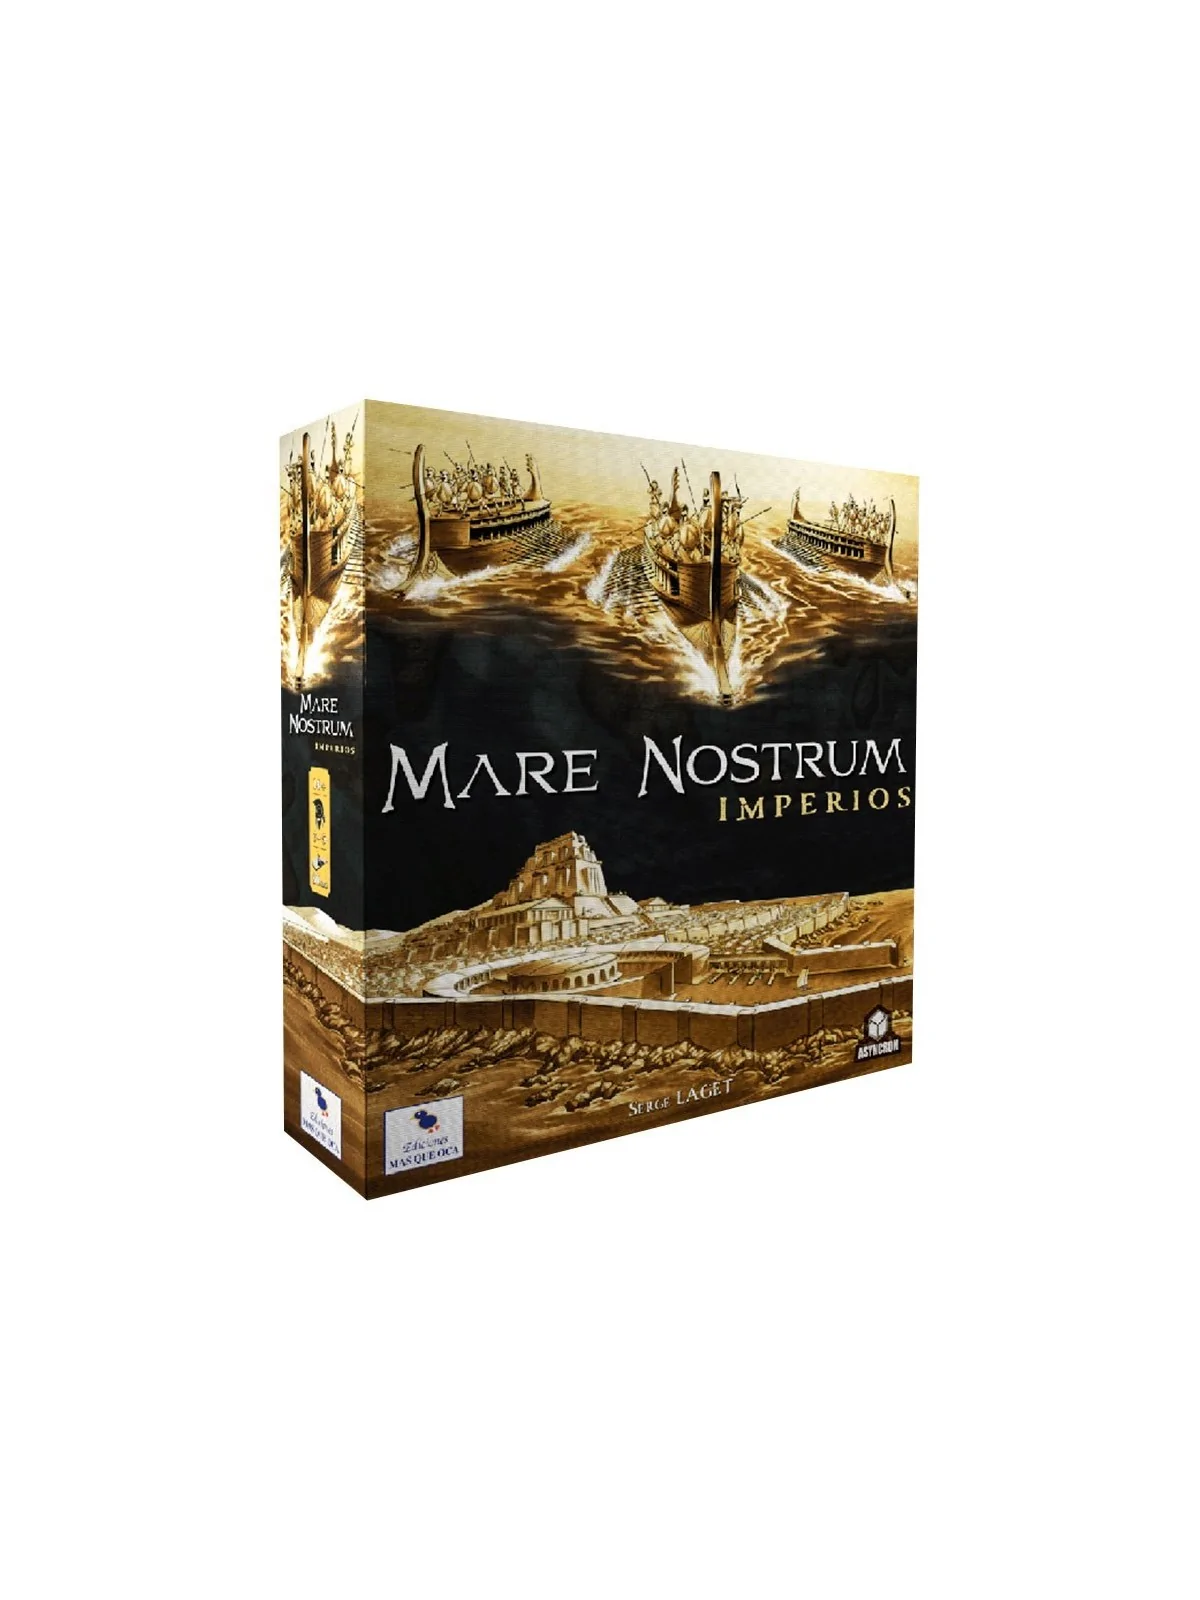 Comprar Mare Nostrum: Imperios barato al mejor precio 58,50 € de MasQu